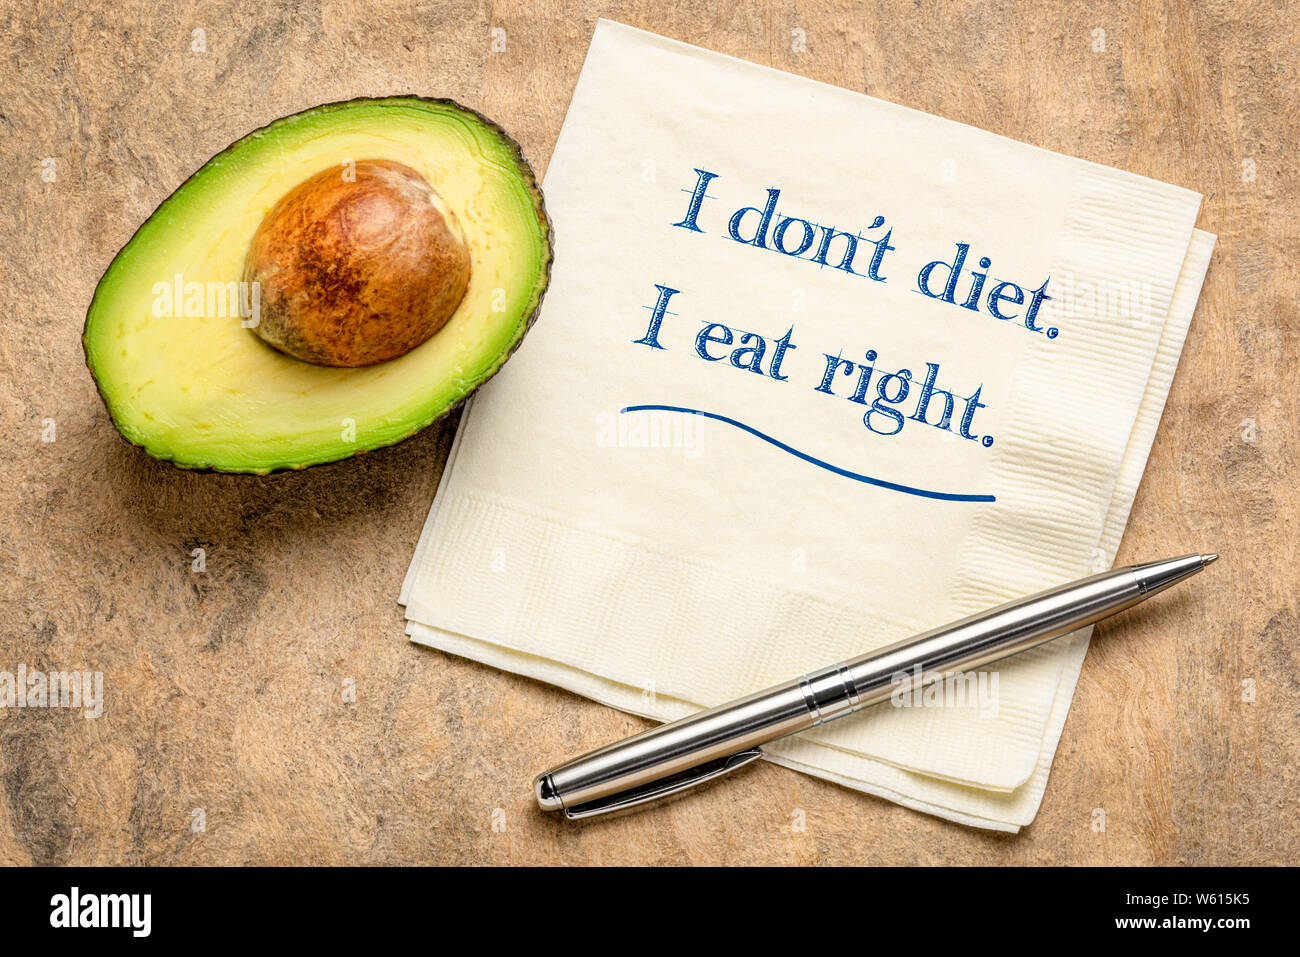 Ich glaube nicht, Ernährung, ich esse Recht - inspirational Schreiben auf eine Serviette mit einem Schnitt Avocado. Stockfoto